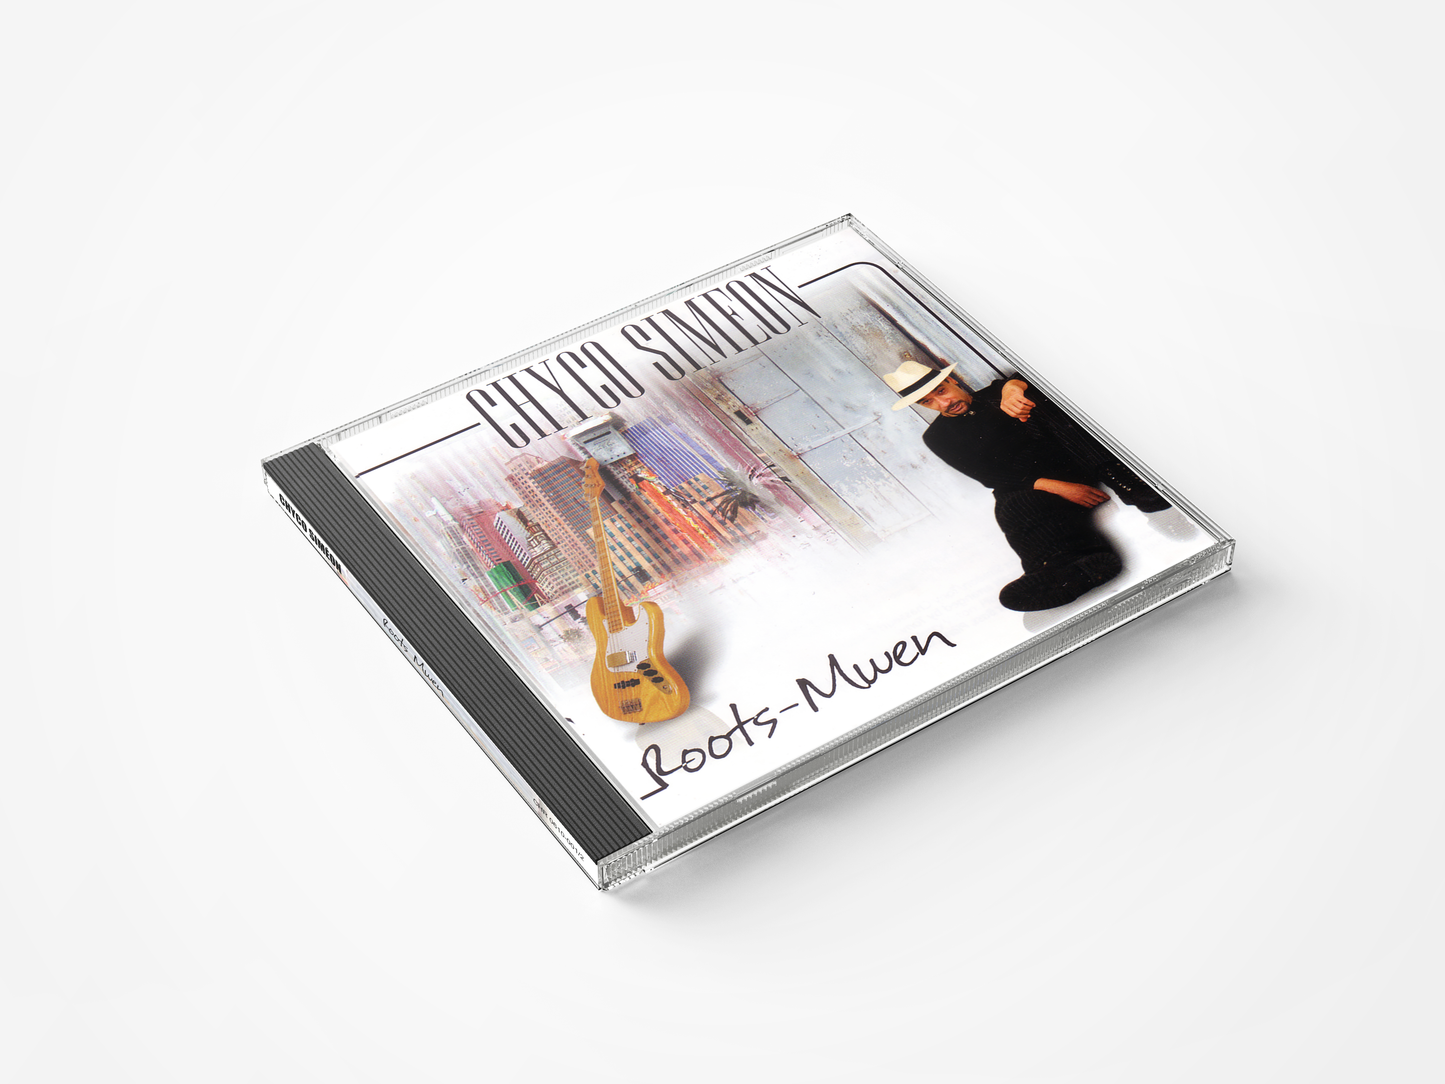 Chyco Siméon - Roots Mwen (CD)